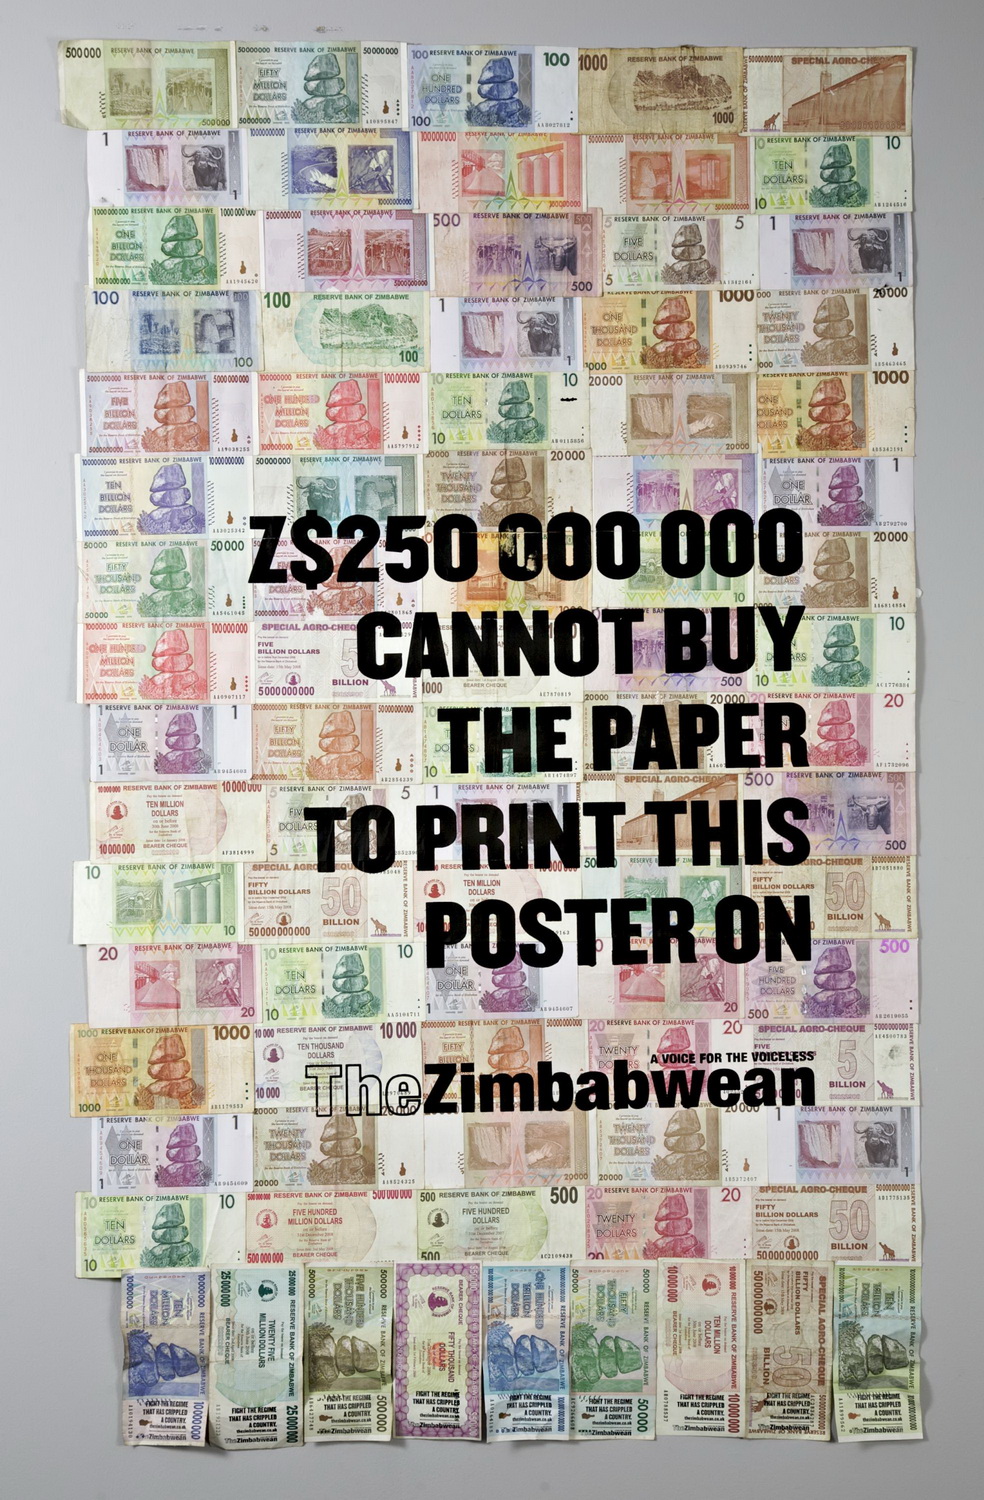 The Zimbabwean Newspaper_Z$250 000 000_resize.jpg